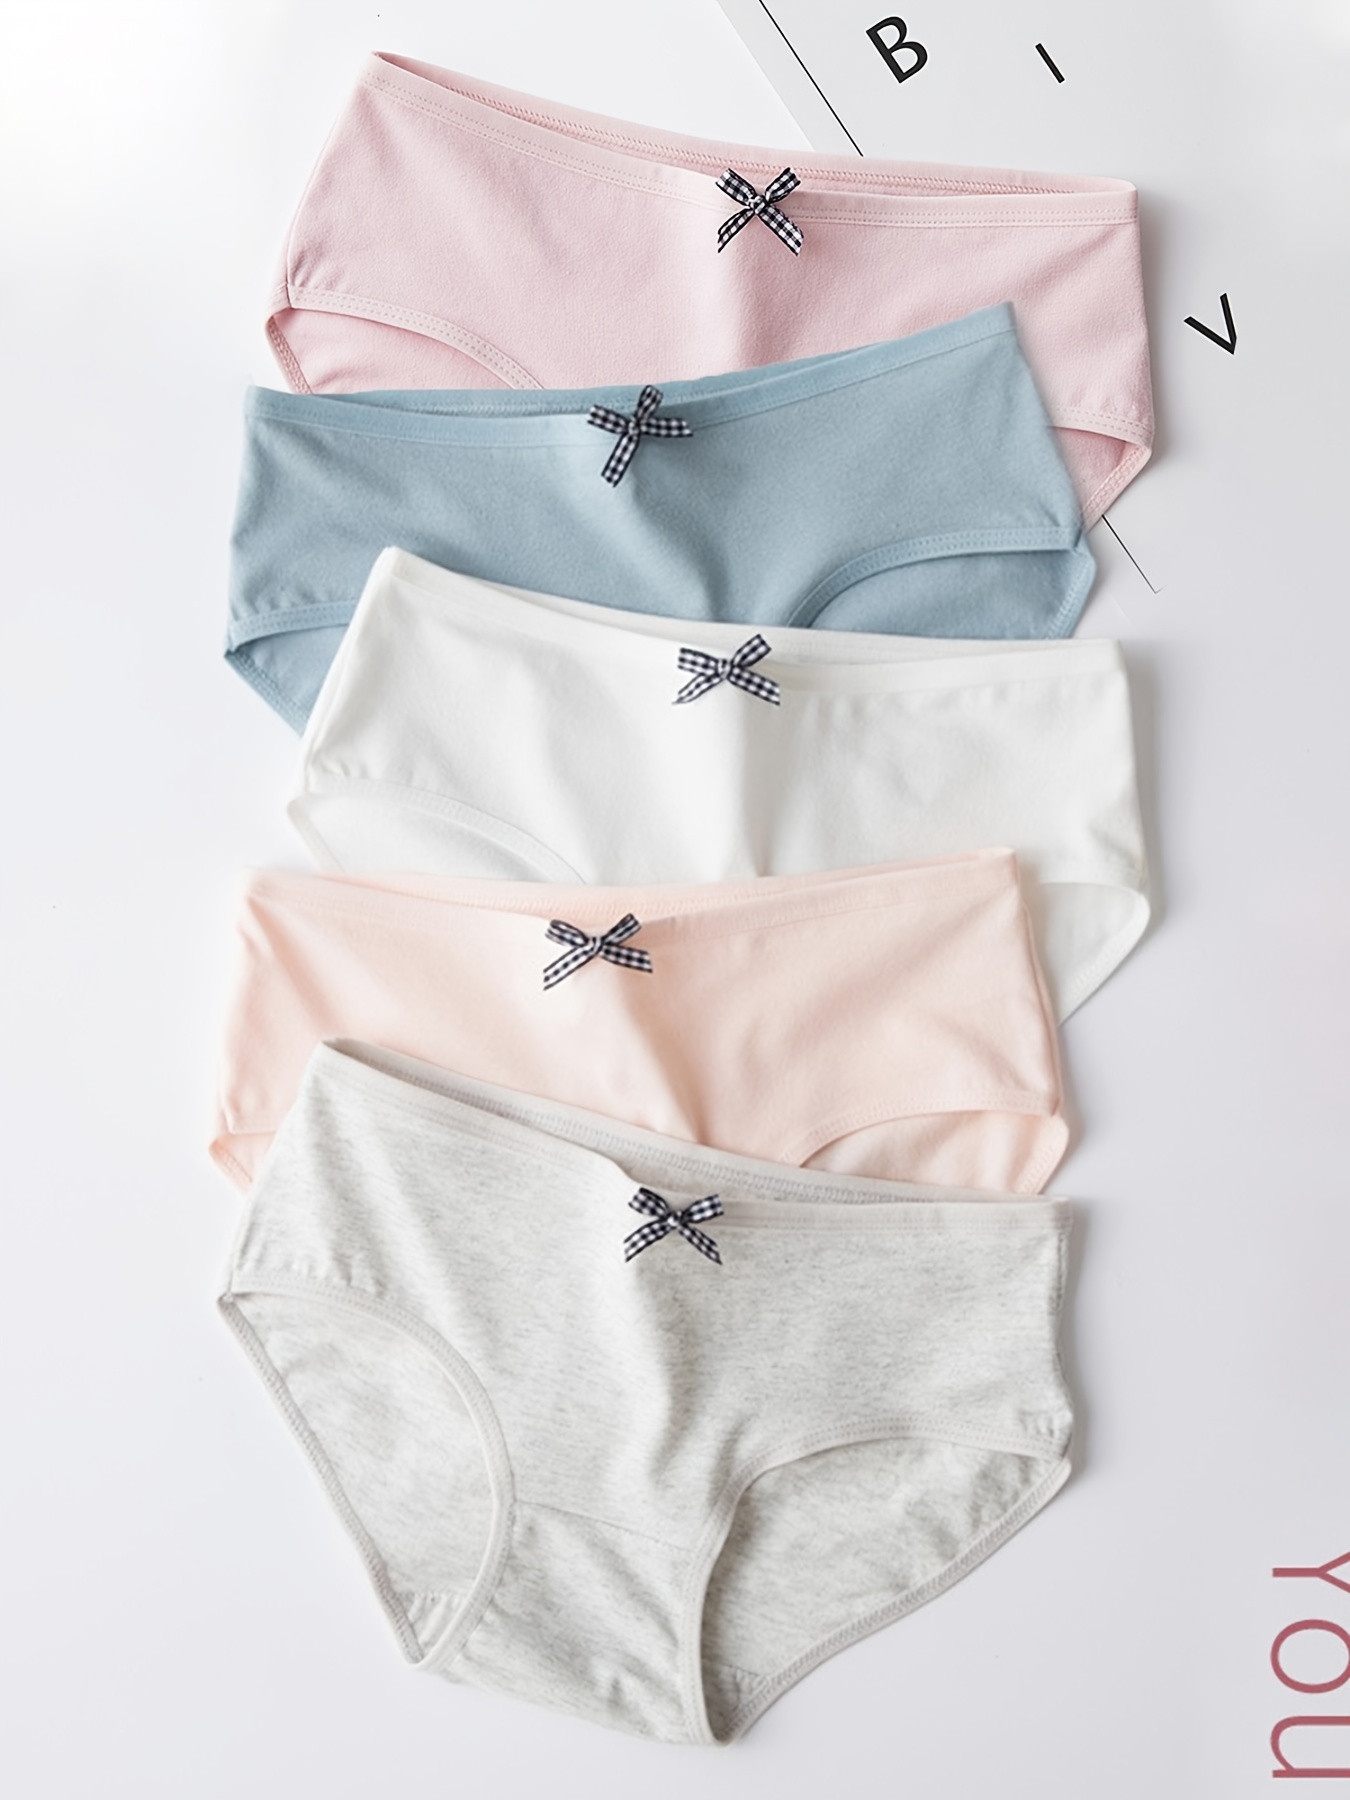 5 Pcs Cute Bow Tie Briefs, Soft & Comfy Simple Stretch Panties, Women's  Lingerie & Underwear